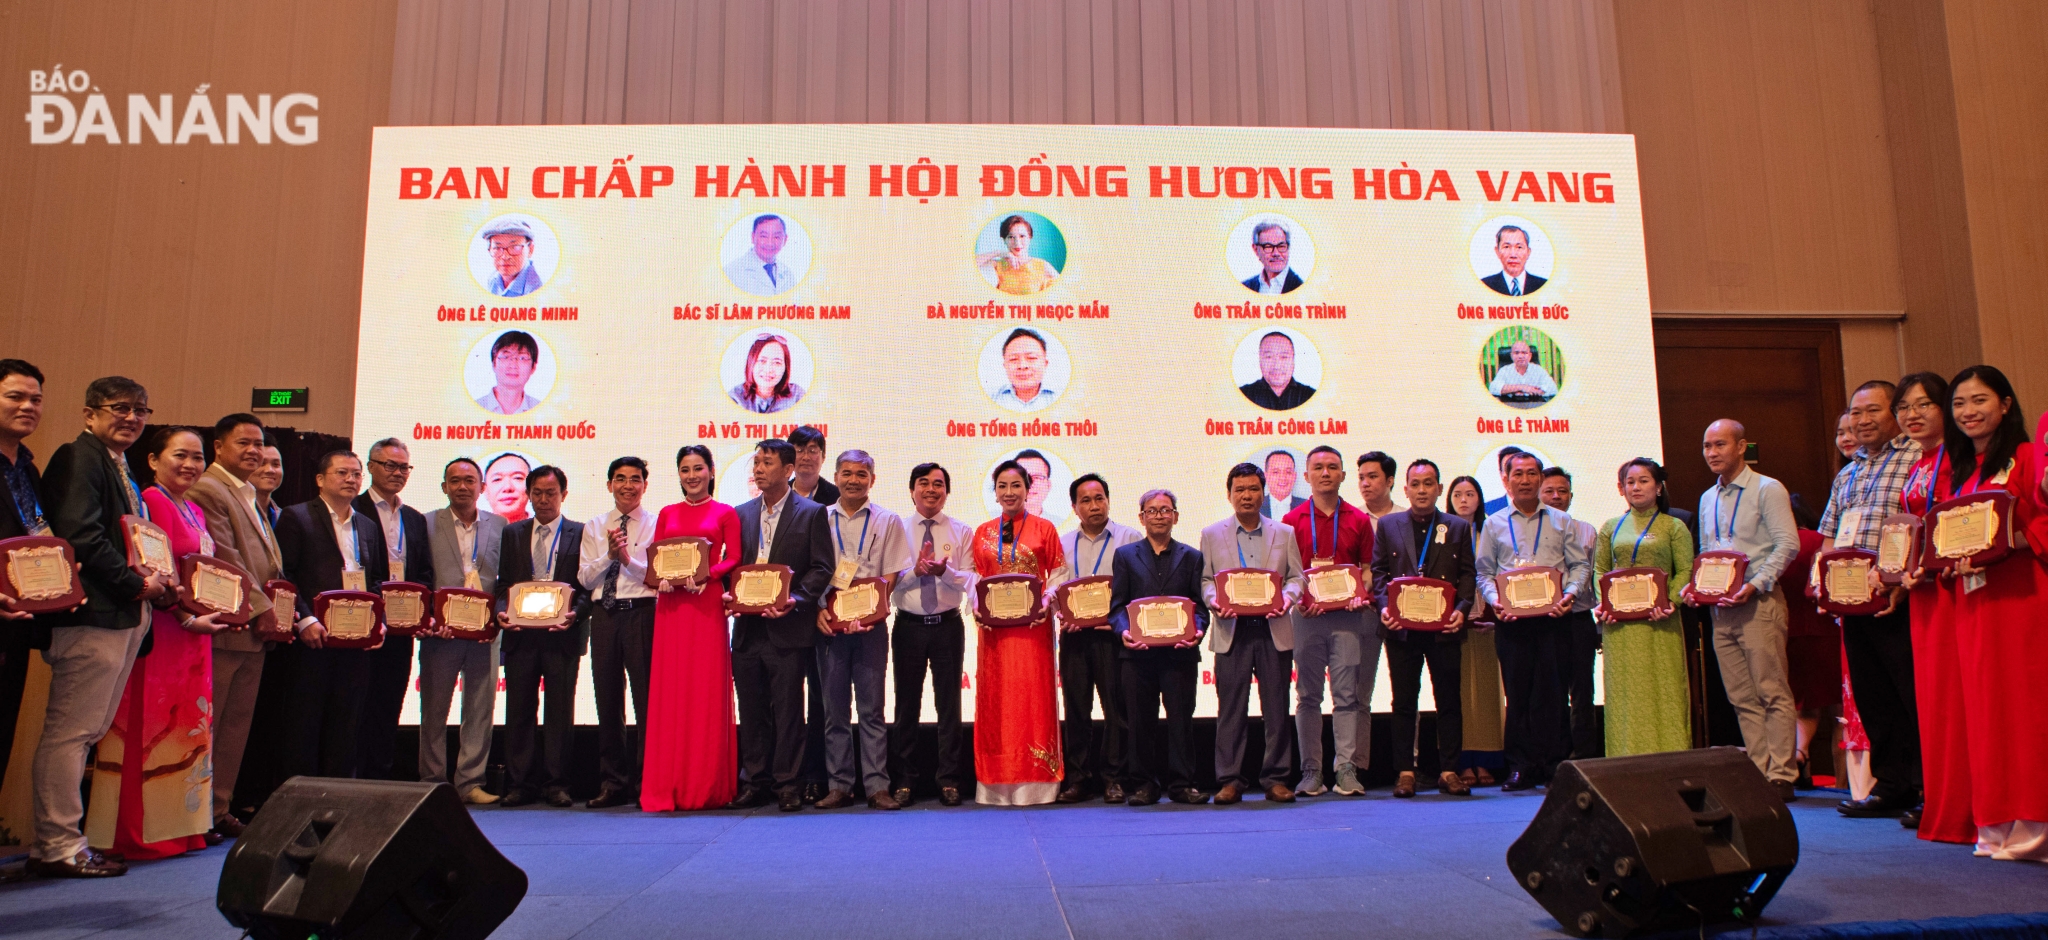 Ra mắt Ban điều hành và các ban chuyên môn của HĐH Hoà Vang tại TP.Hồ Chí Minh.